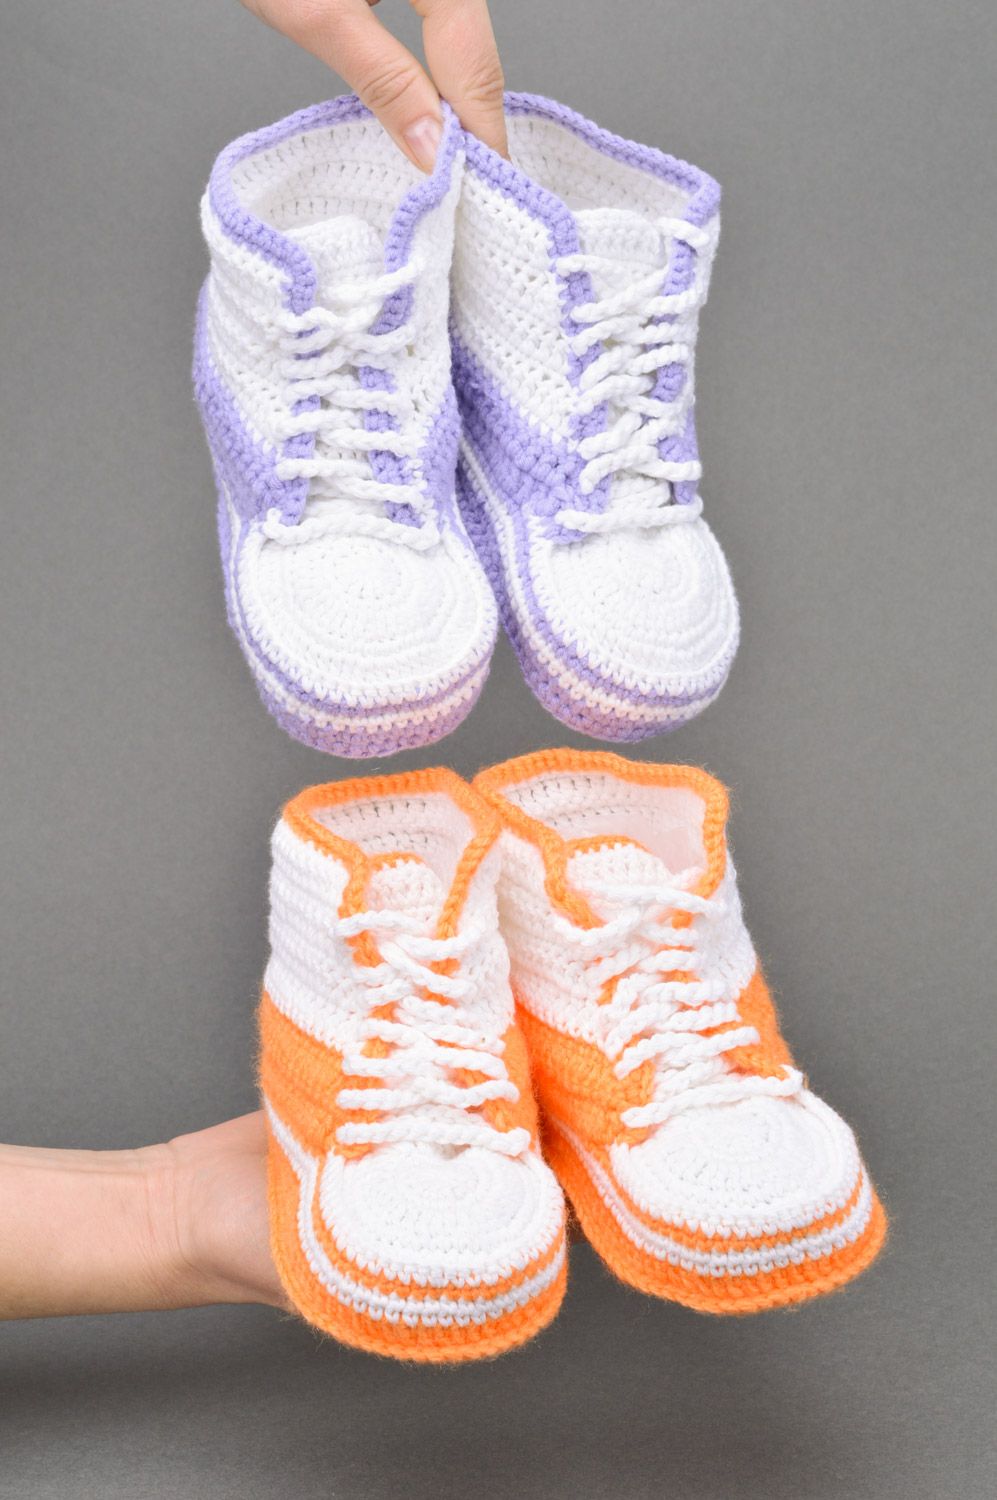 Patucos de bebé artesanales tejidos a ganchillo 2 pares anaranjados y violetas foto 3